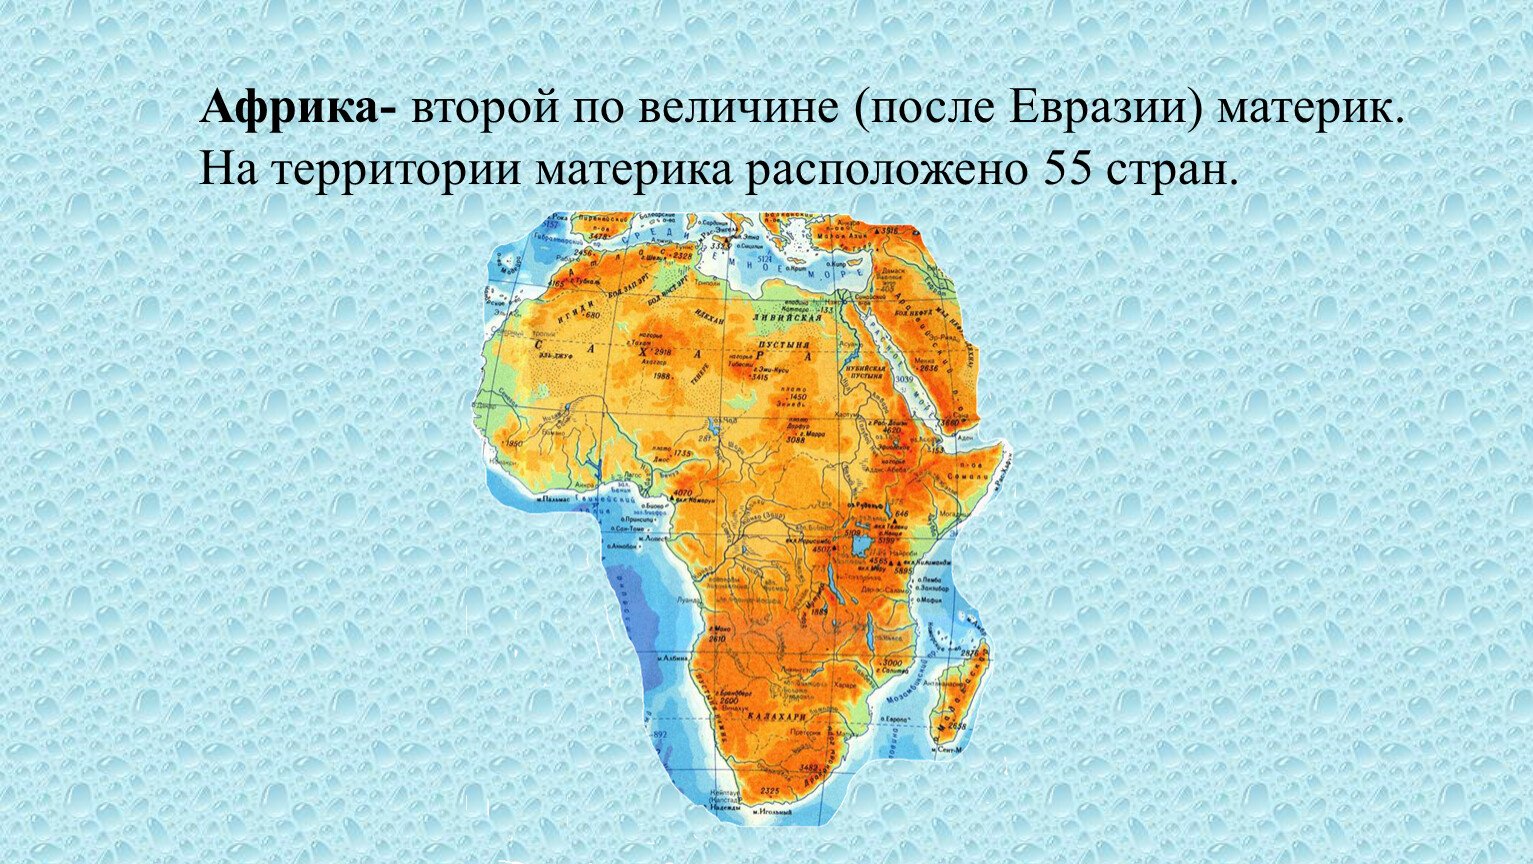 Реки и озера материка африки. Карта Африки. Африка материк. Материк Африка на карте. Карта африканского континента.